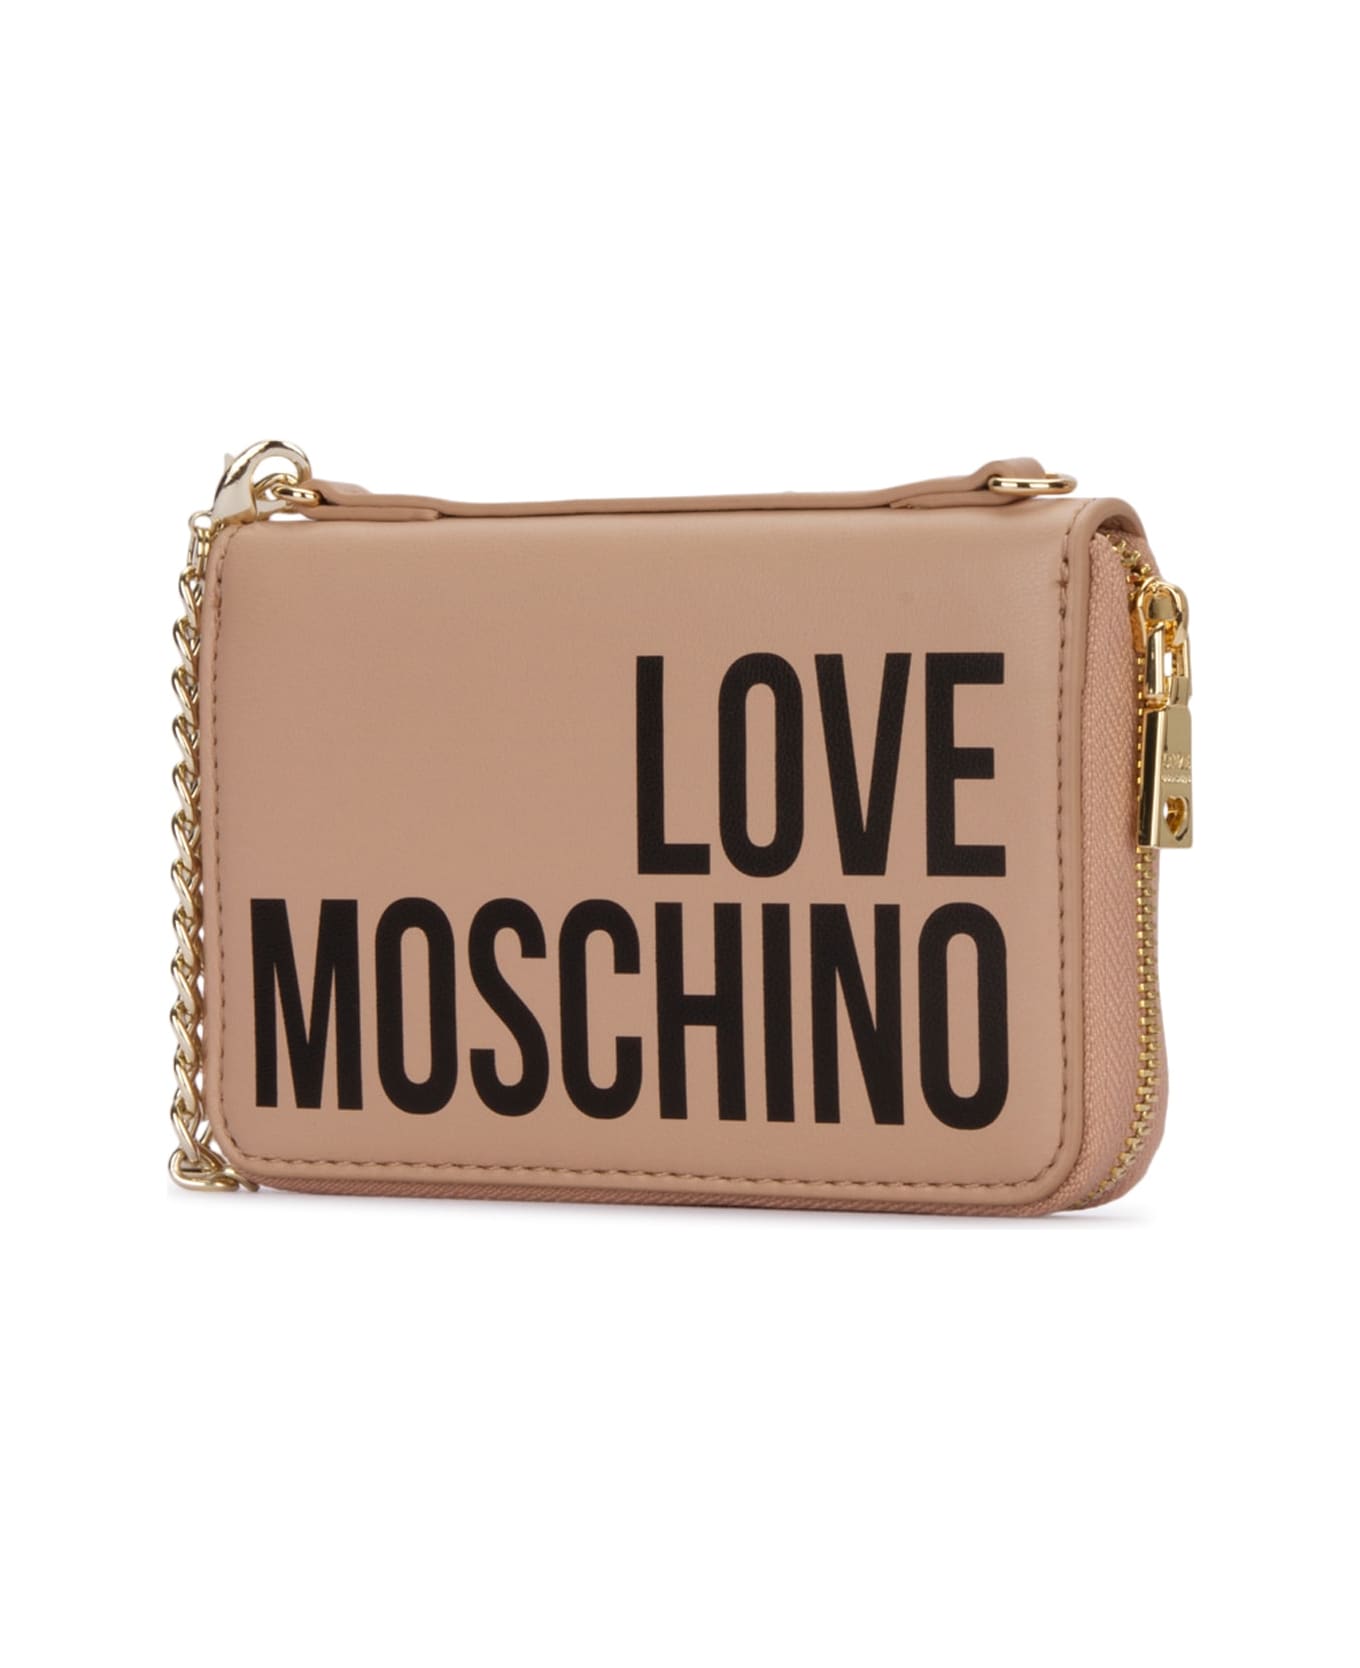 Love Moschino Accessori - 107